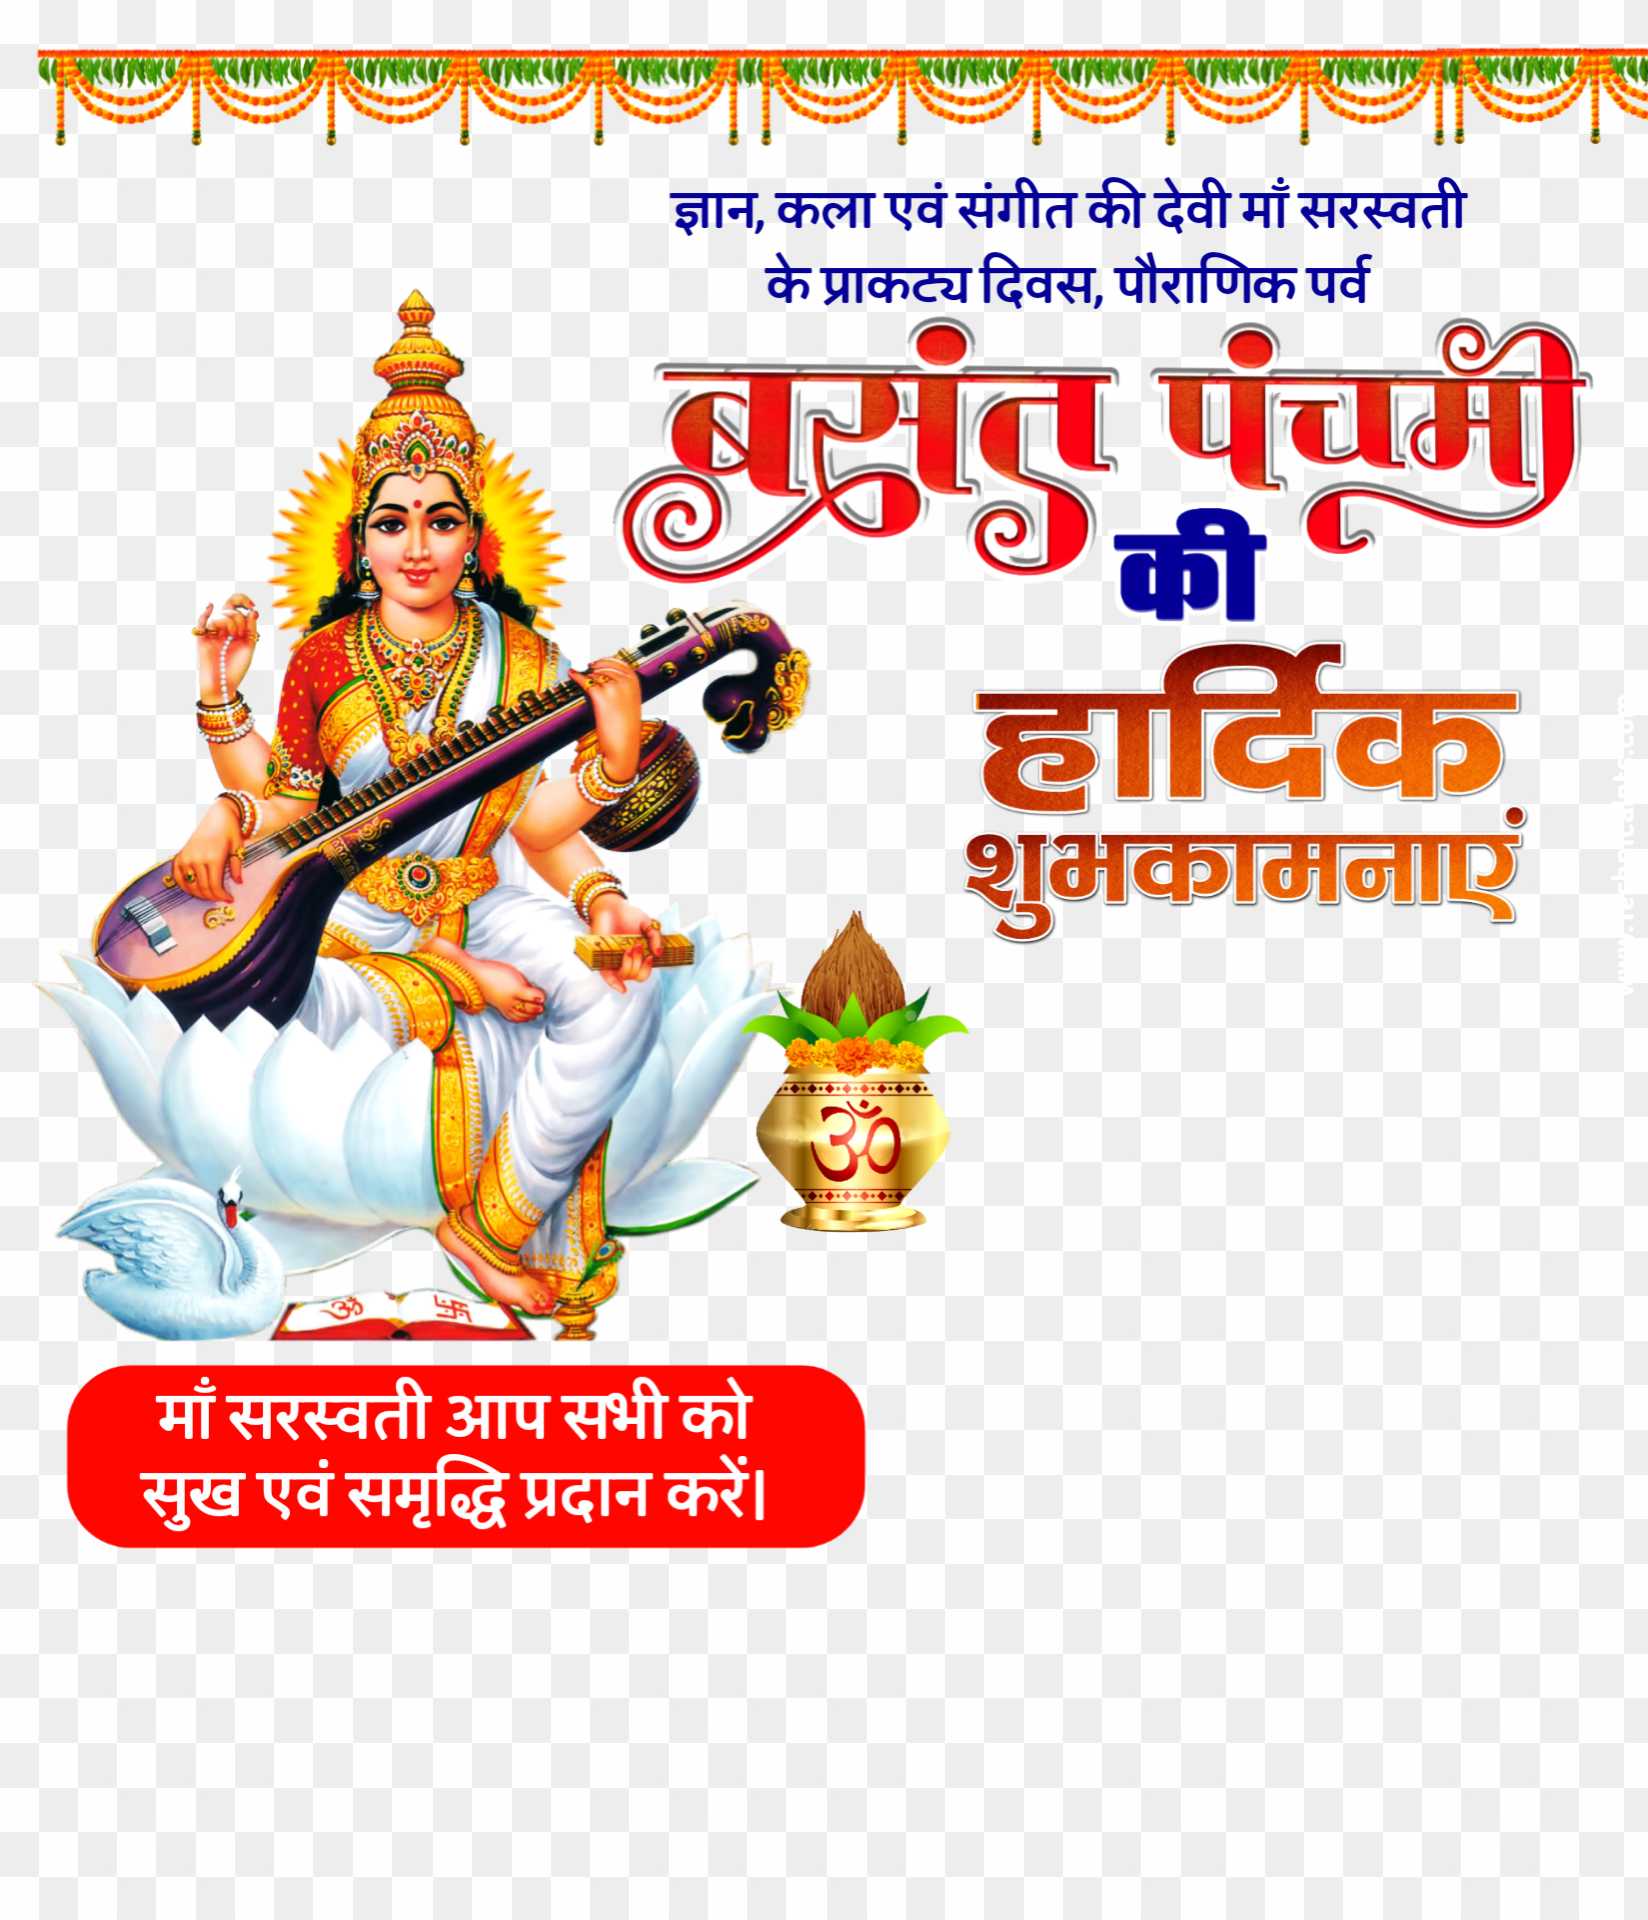 Happy Basant Panchami in Hindi PNG images 